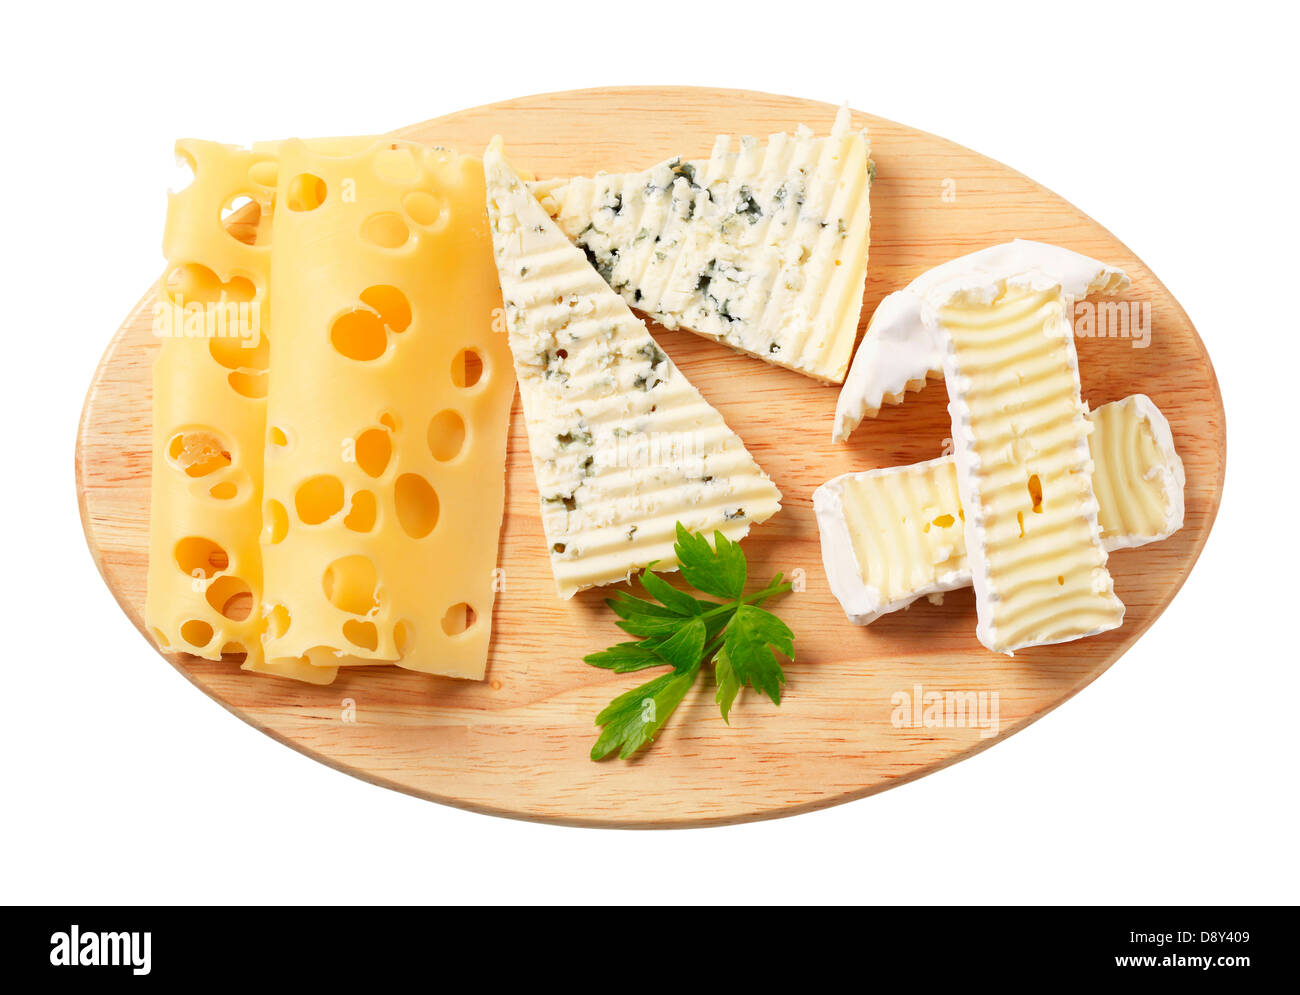 Variété de fromages sur une planche à découper Banque D'Images